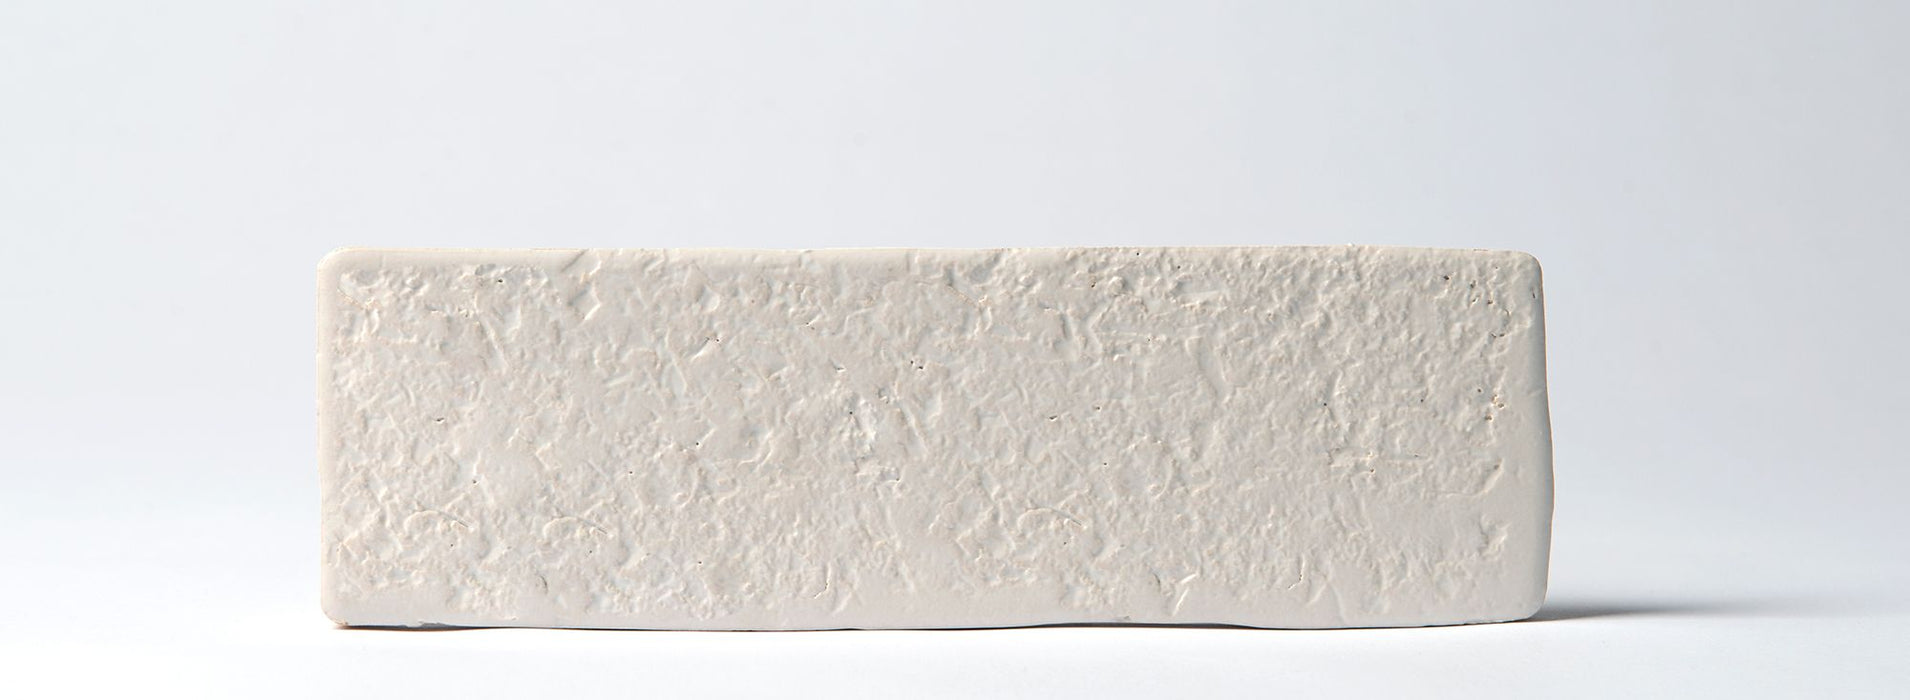 Ceres Rustico White Ceramic Tile - Matte